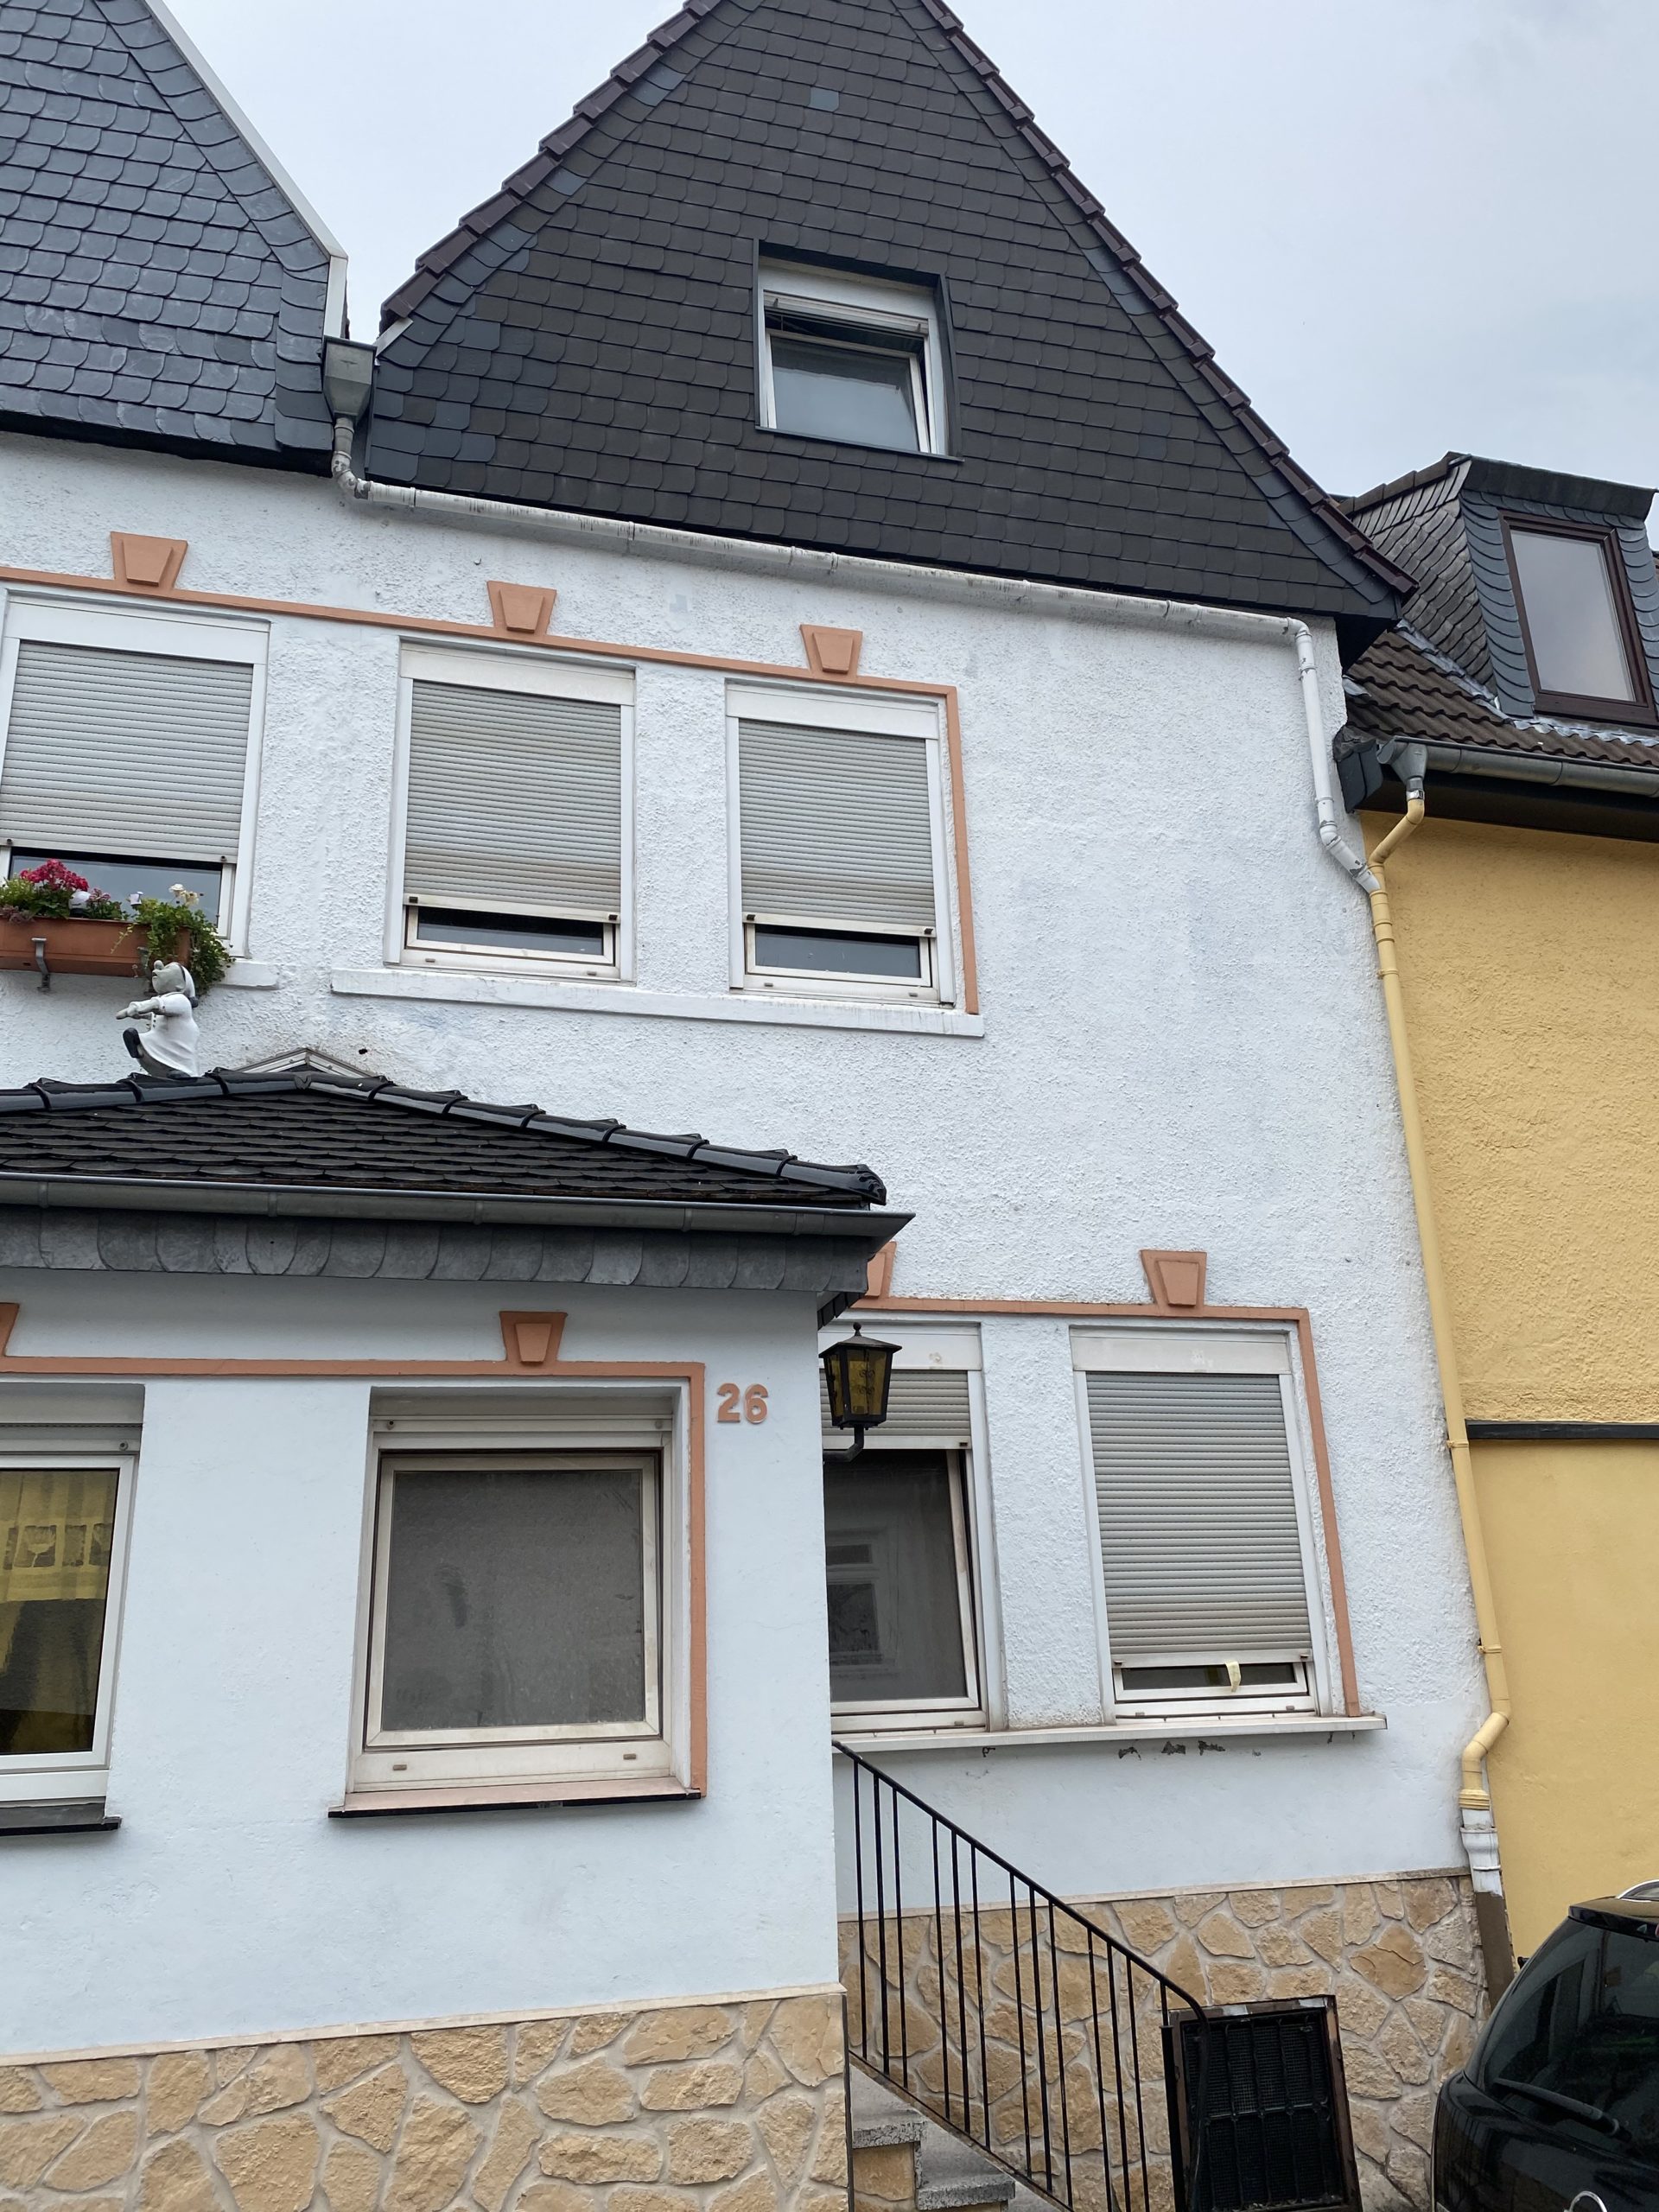 Billige Häuser Zum Verkauf In Deutschland